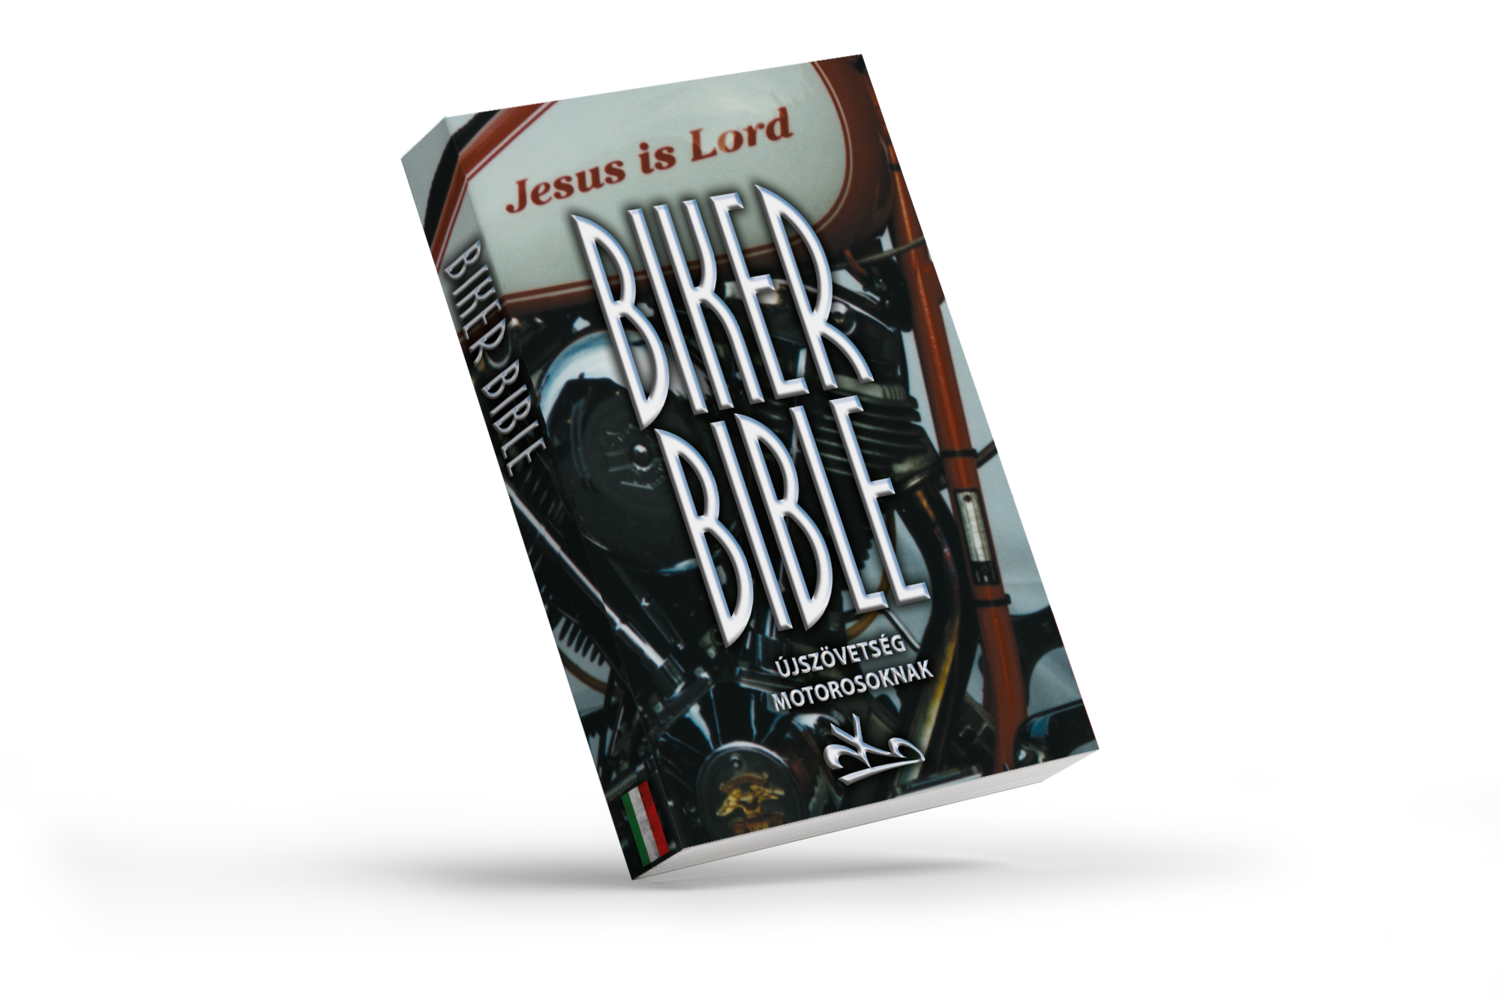 Biker Bibel